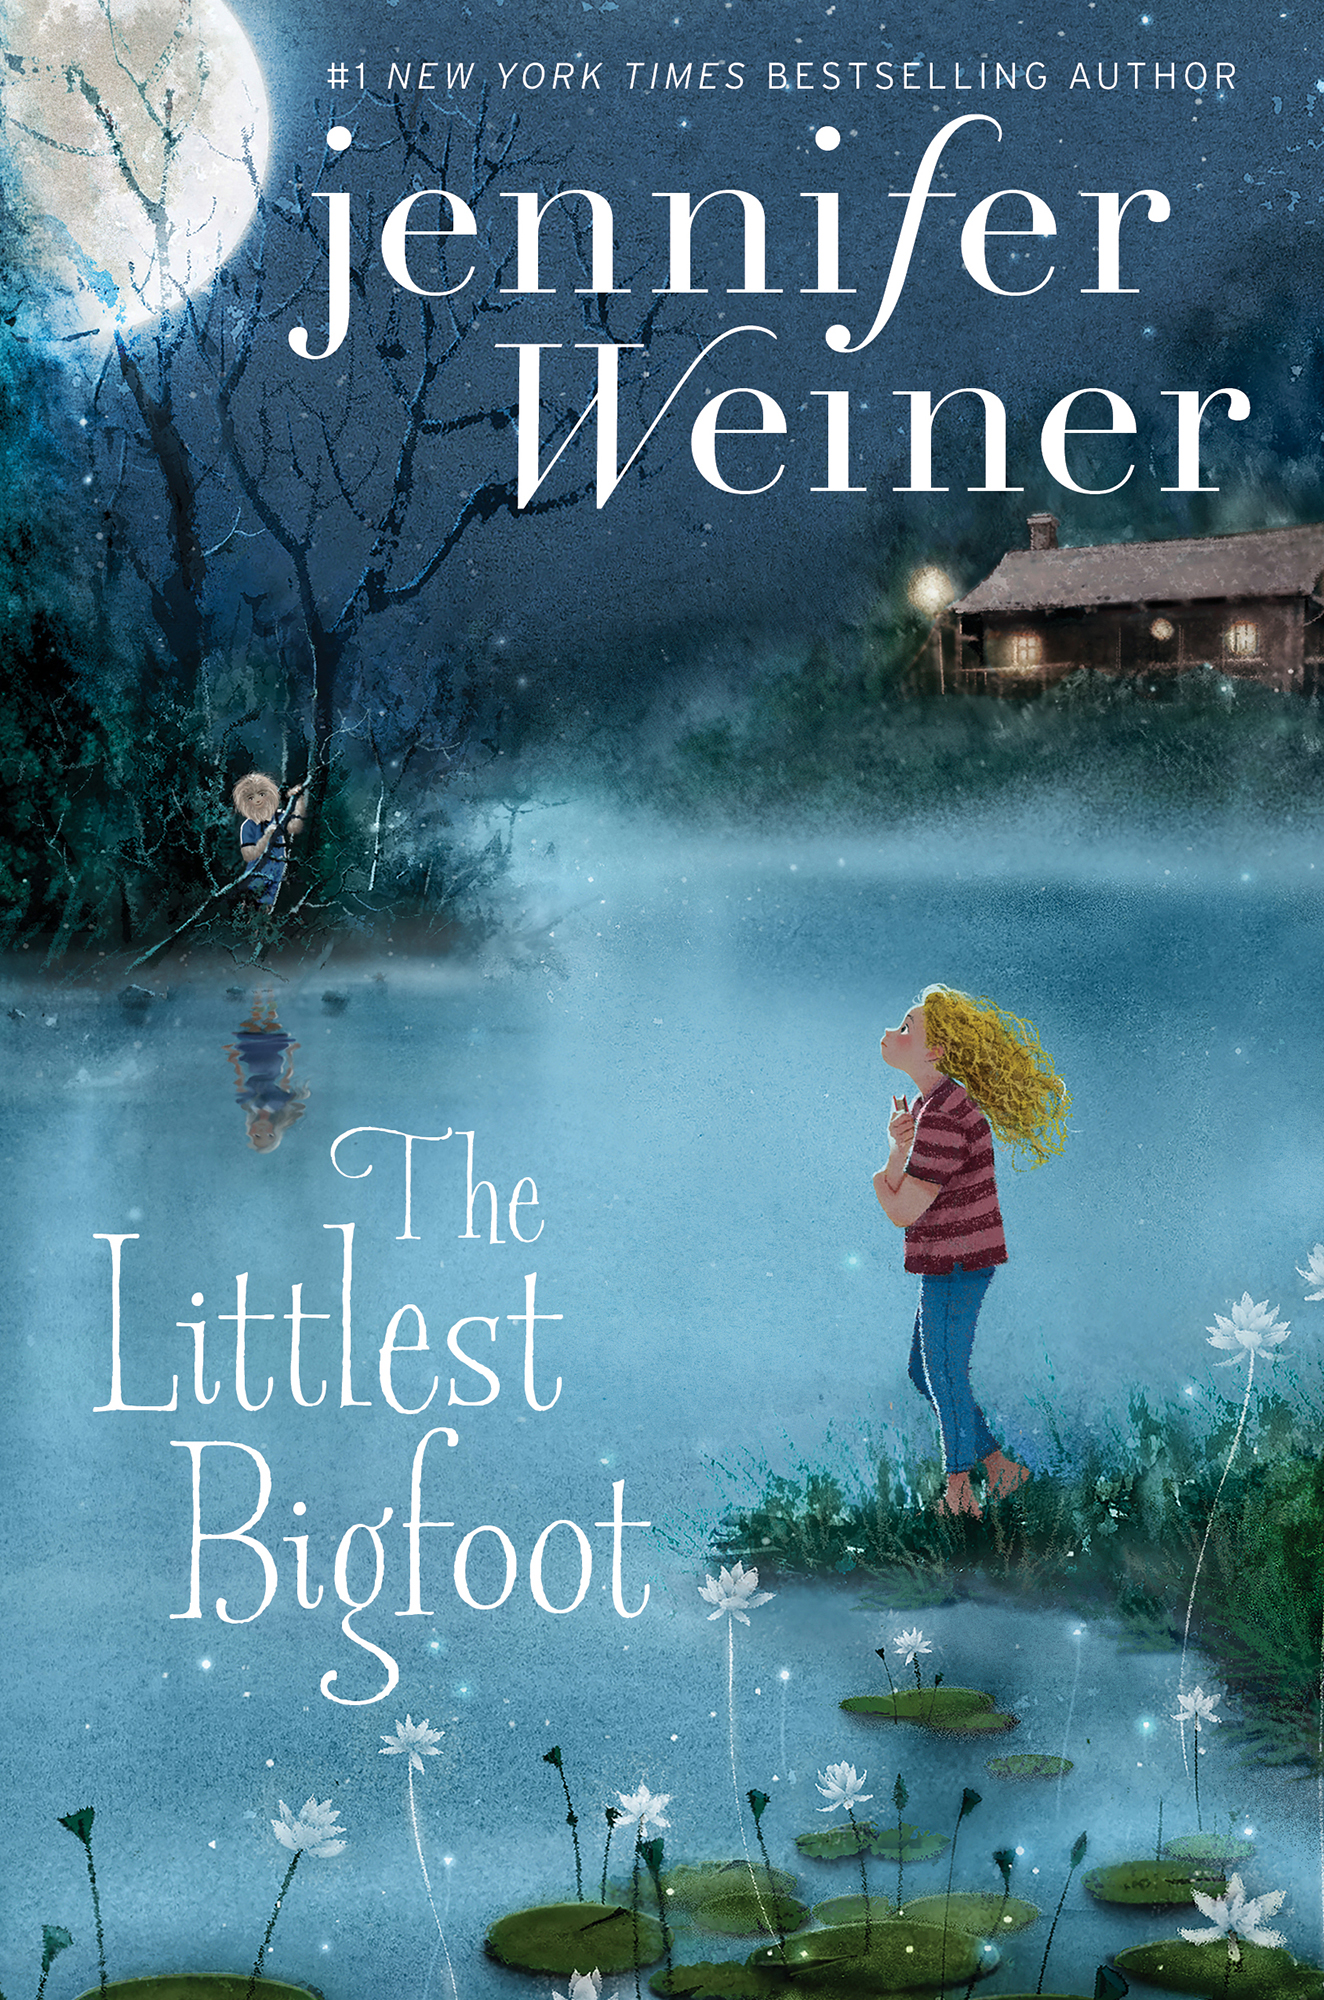 The Littlest Bigfoot by Jennifer Weiner